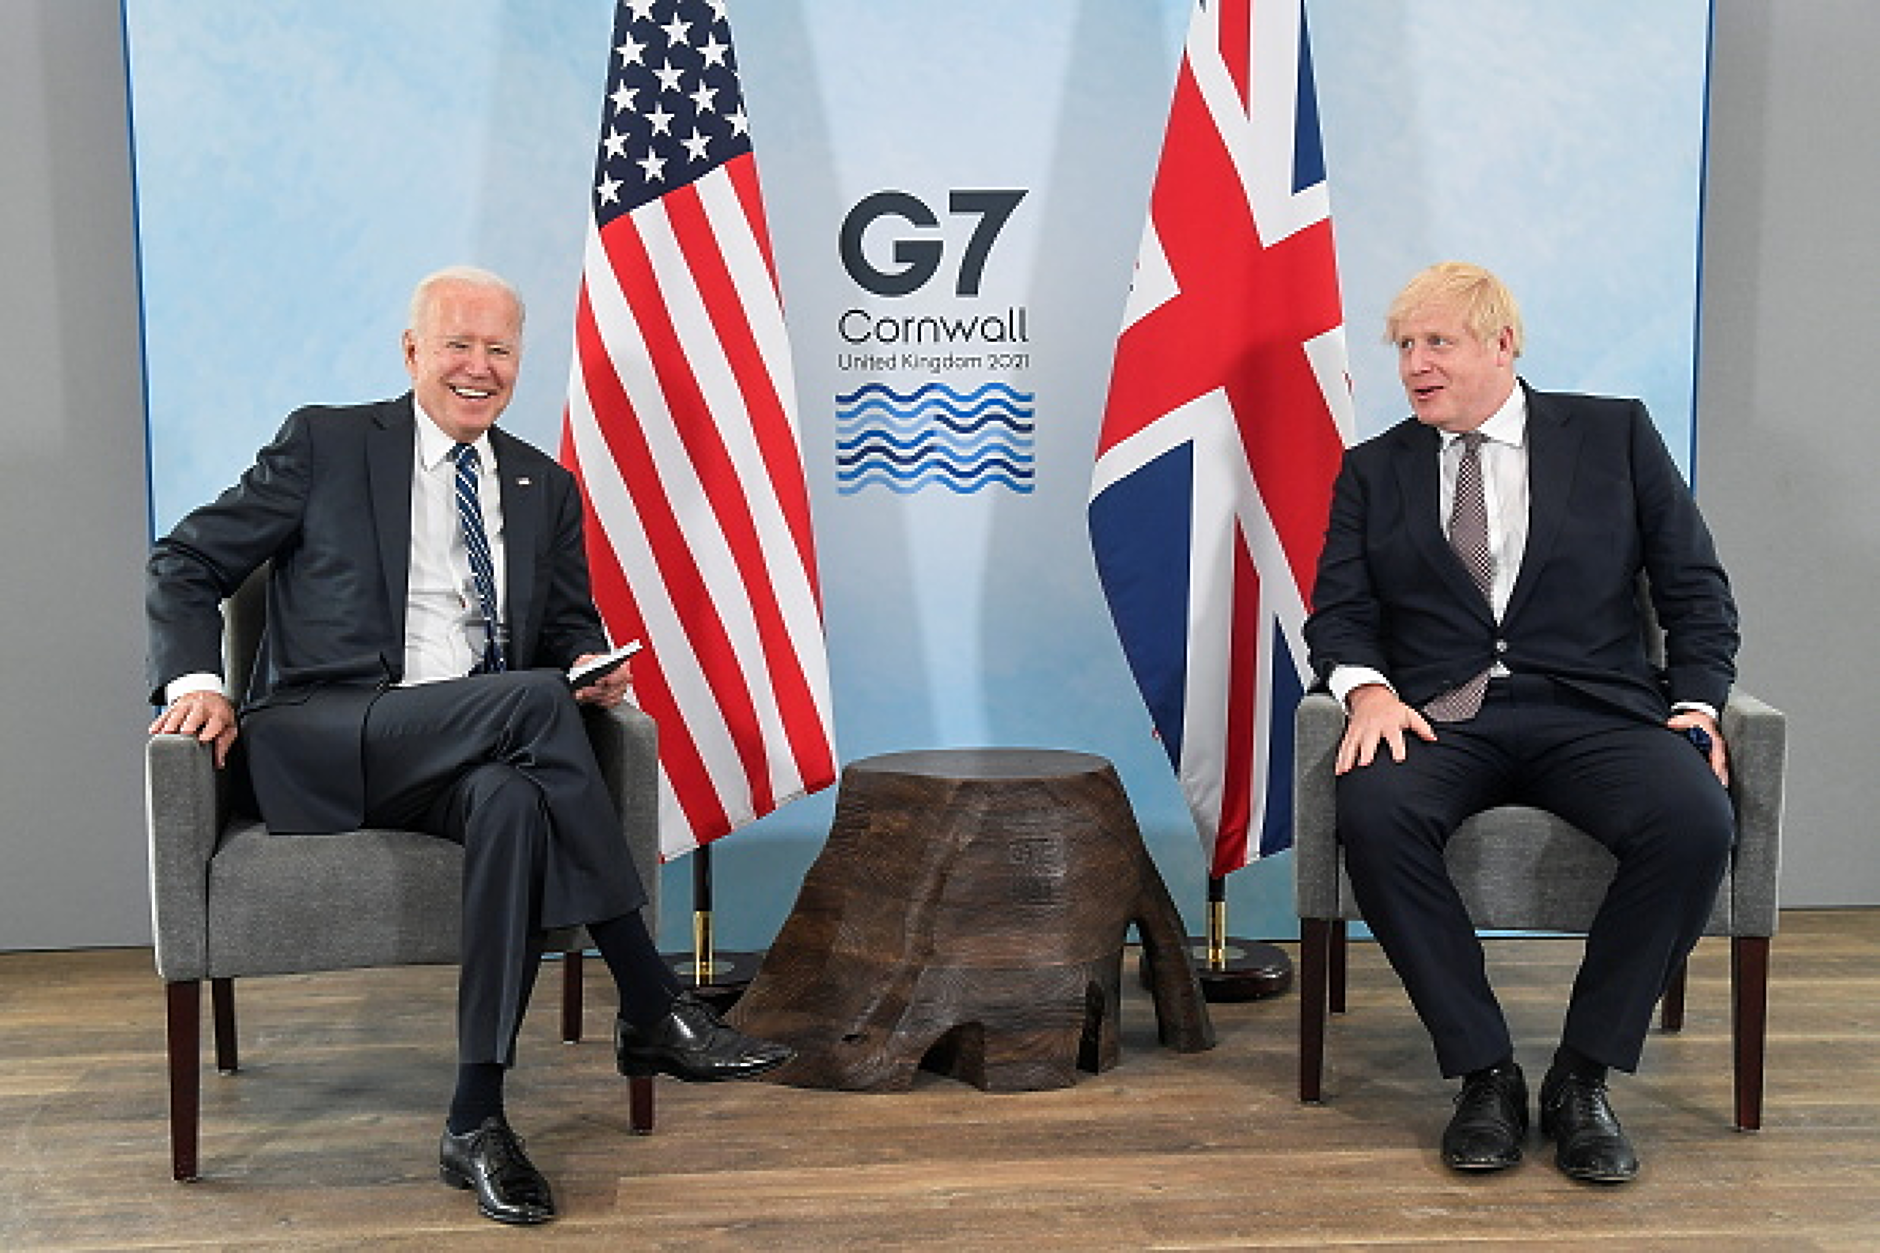 Правителствата на САЩ и Великобритания са с най-ниско доверие сред държавите от Г-7 